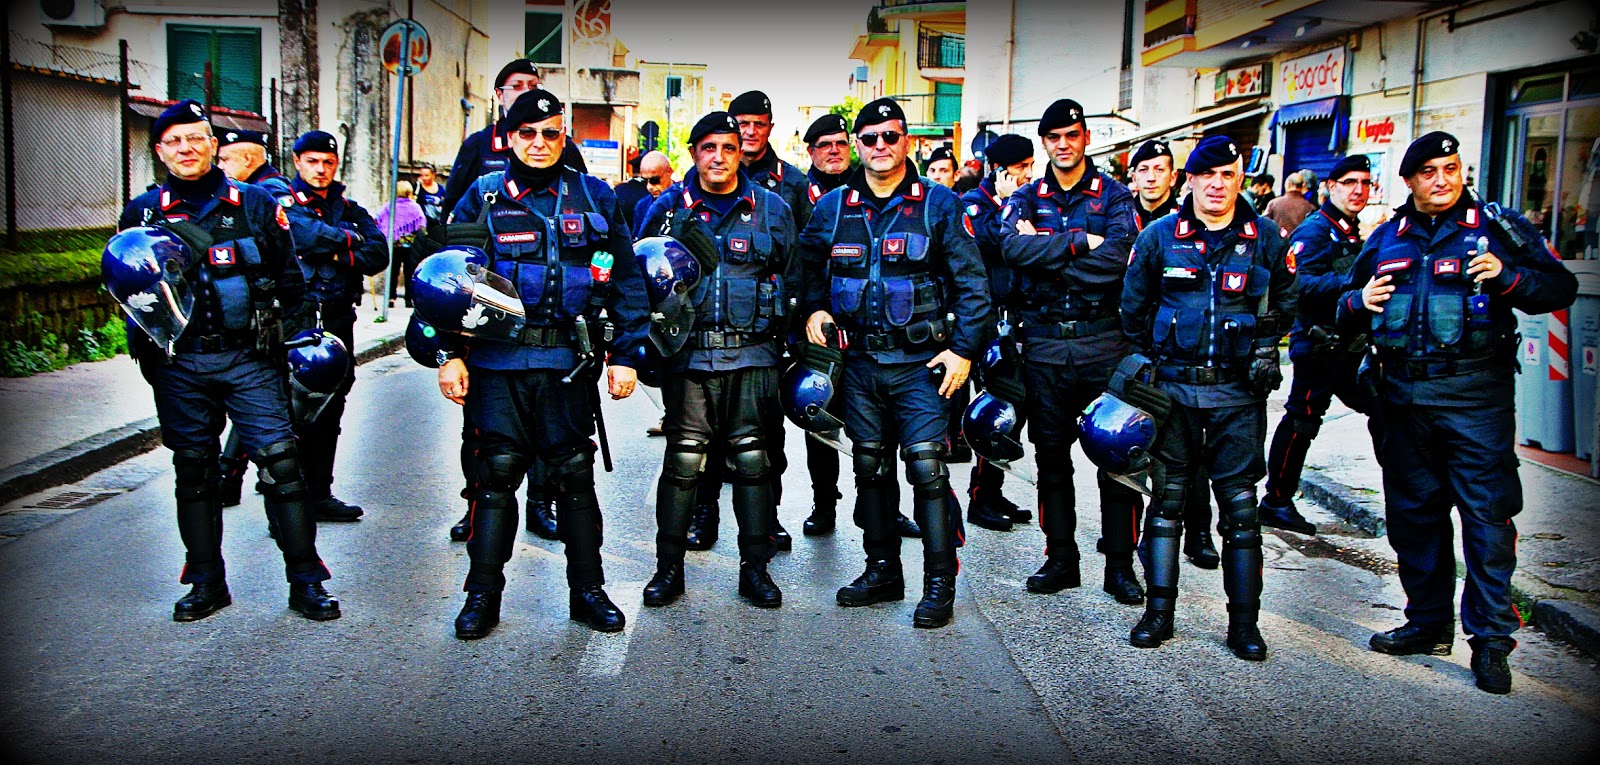 Группа милиционеров. Карабинеры в Италии. Форма карабинеров Италии. Карабинеры Испания. Военная полиция в Италии карабинеры.